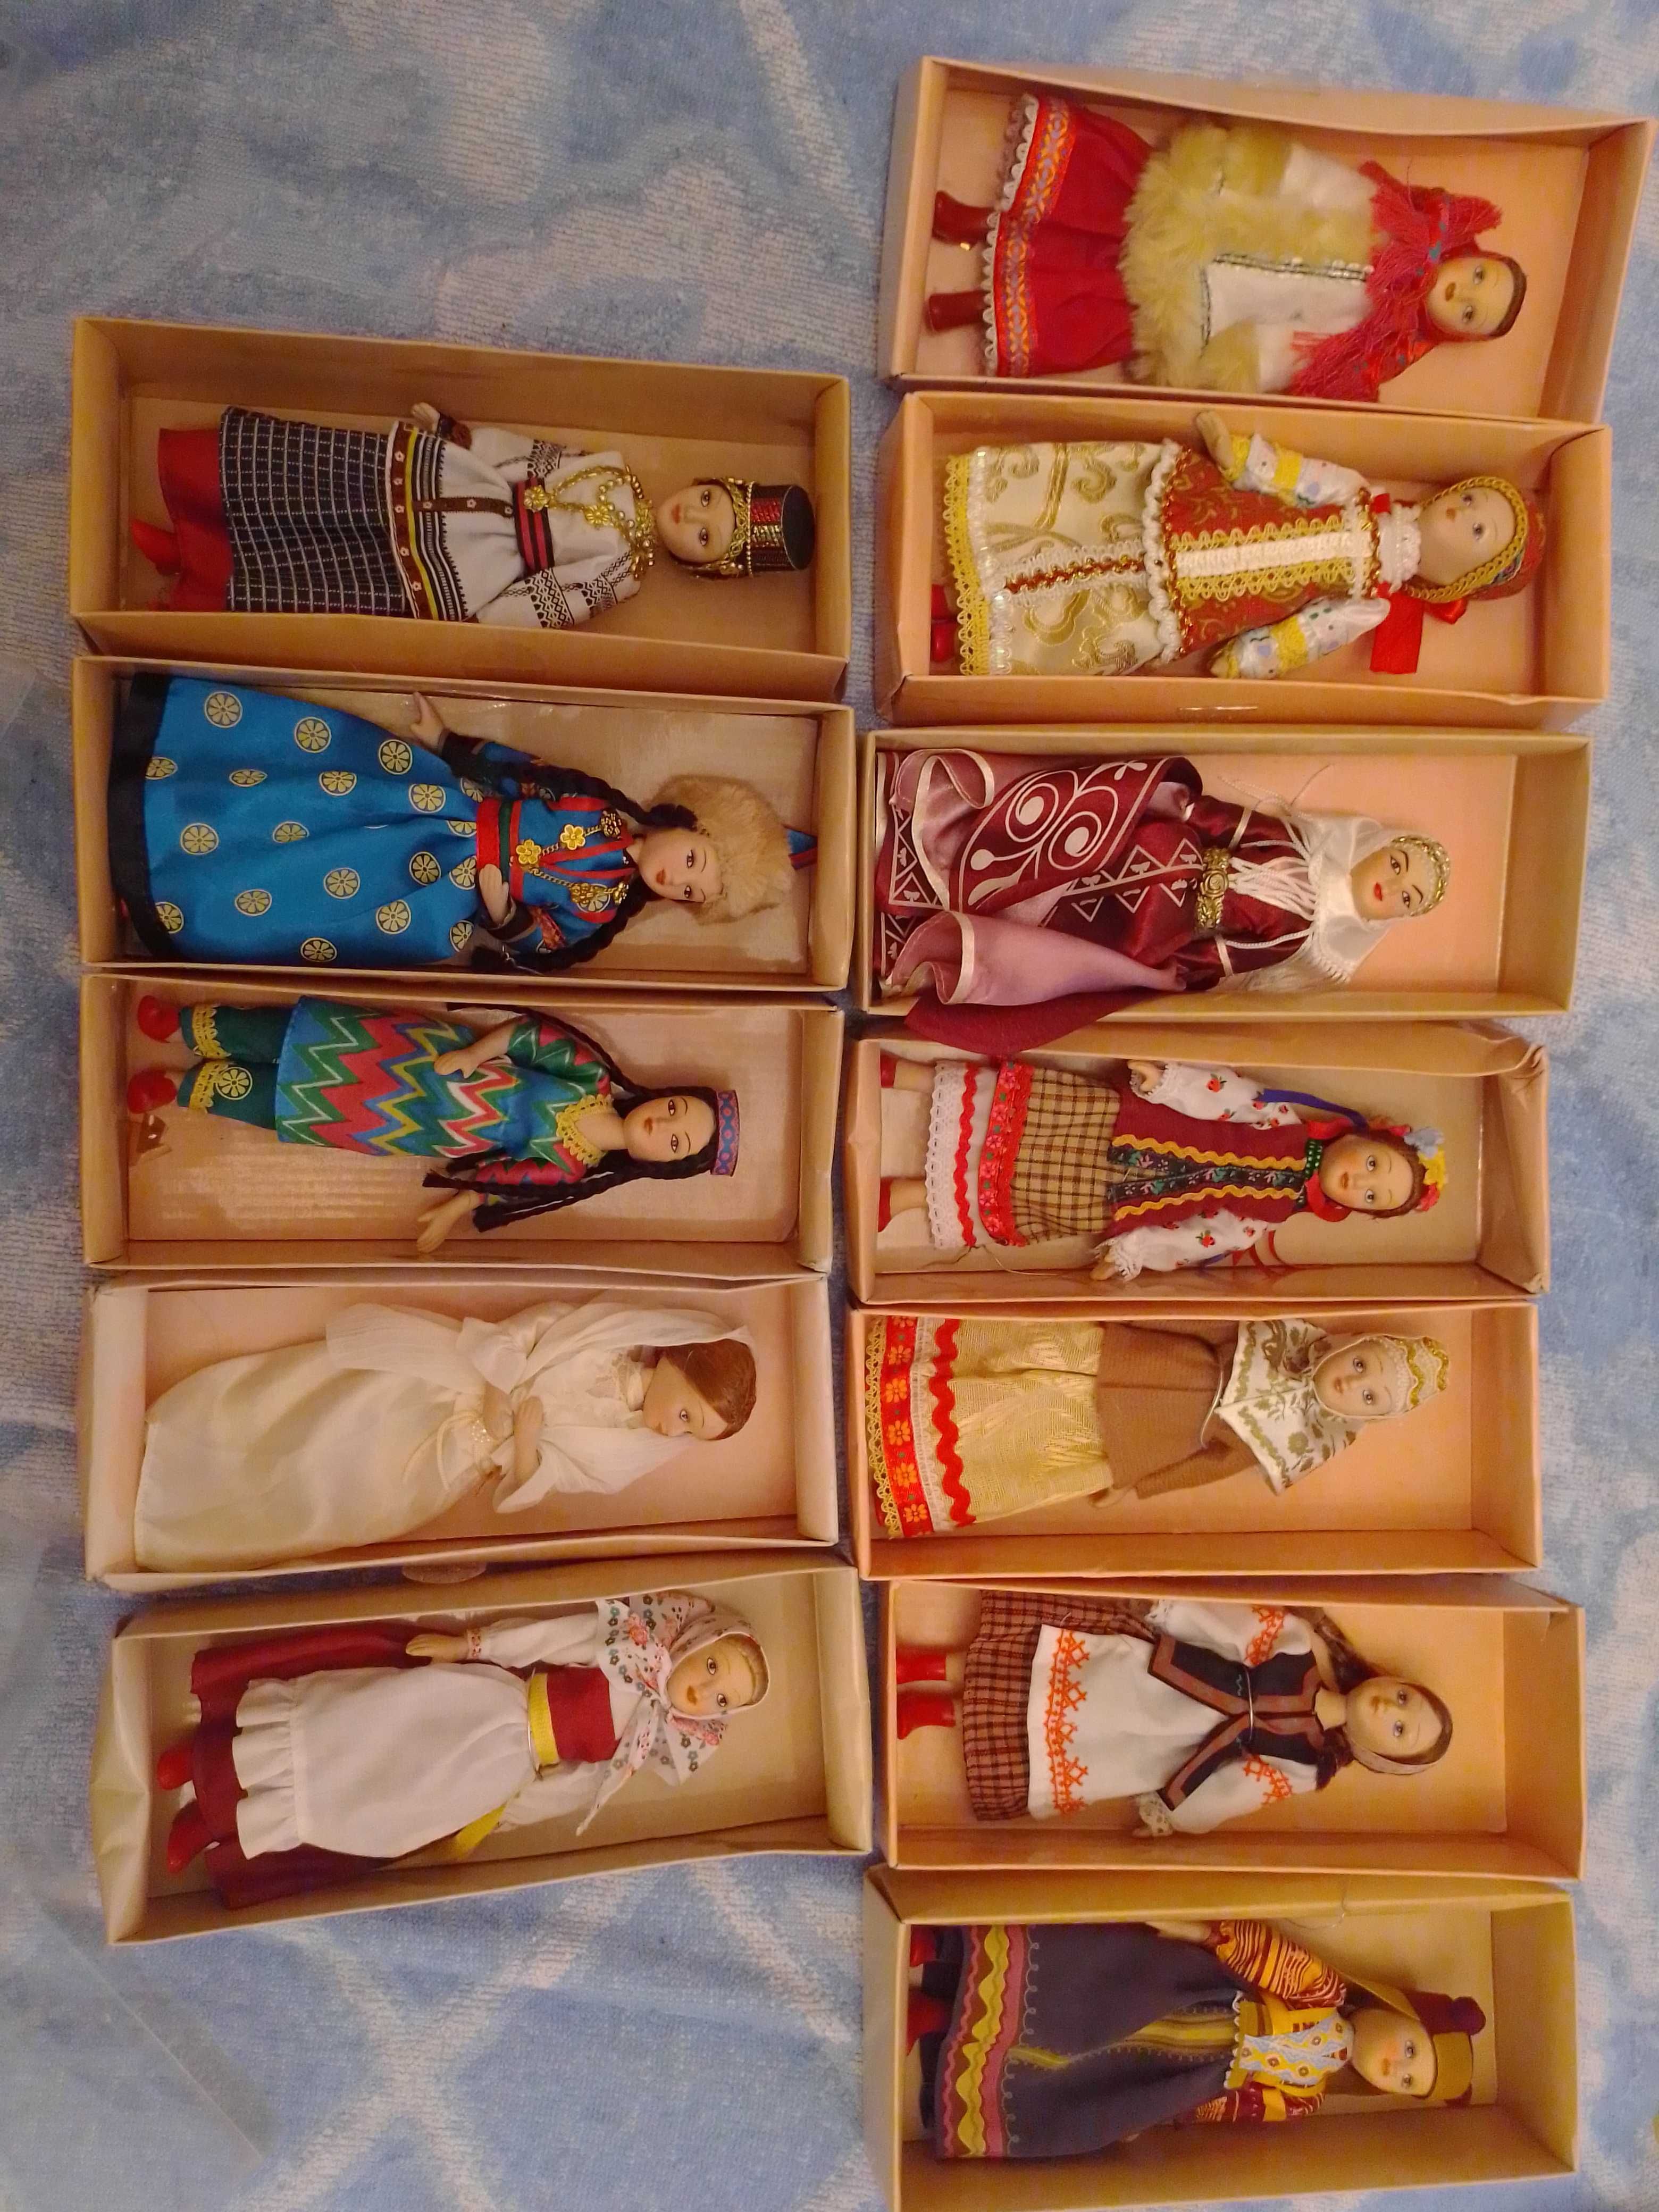 Фарфоровые куклы Deagostini Куклы в народных костюмах